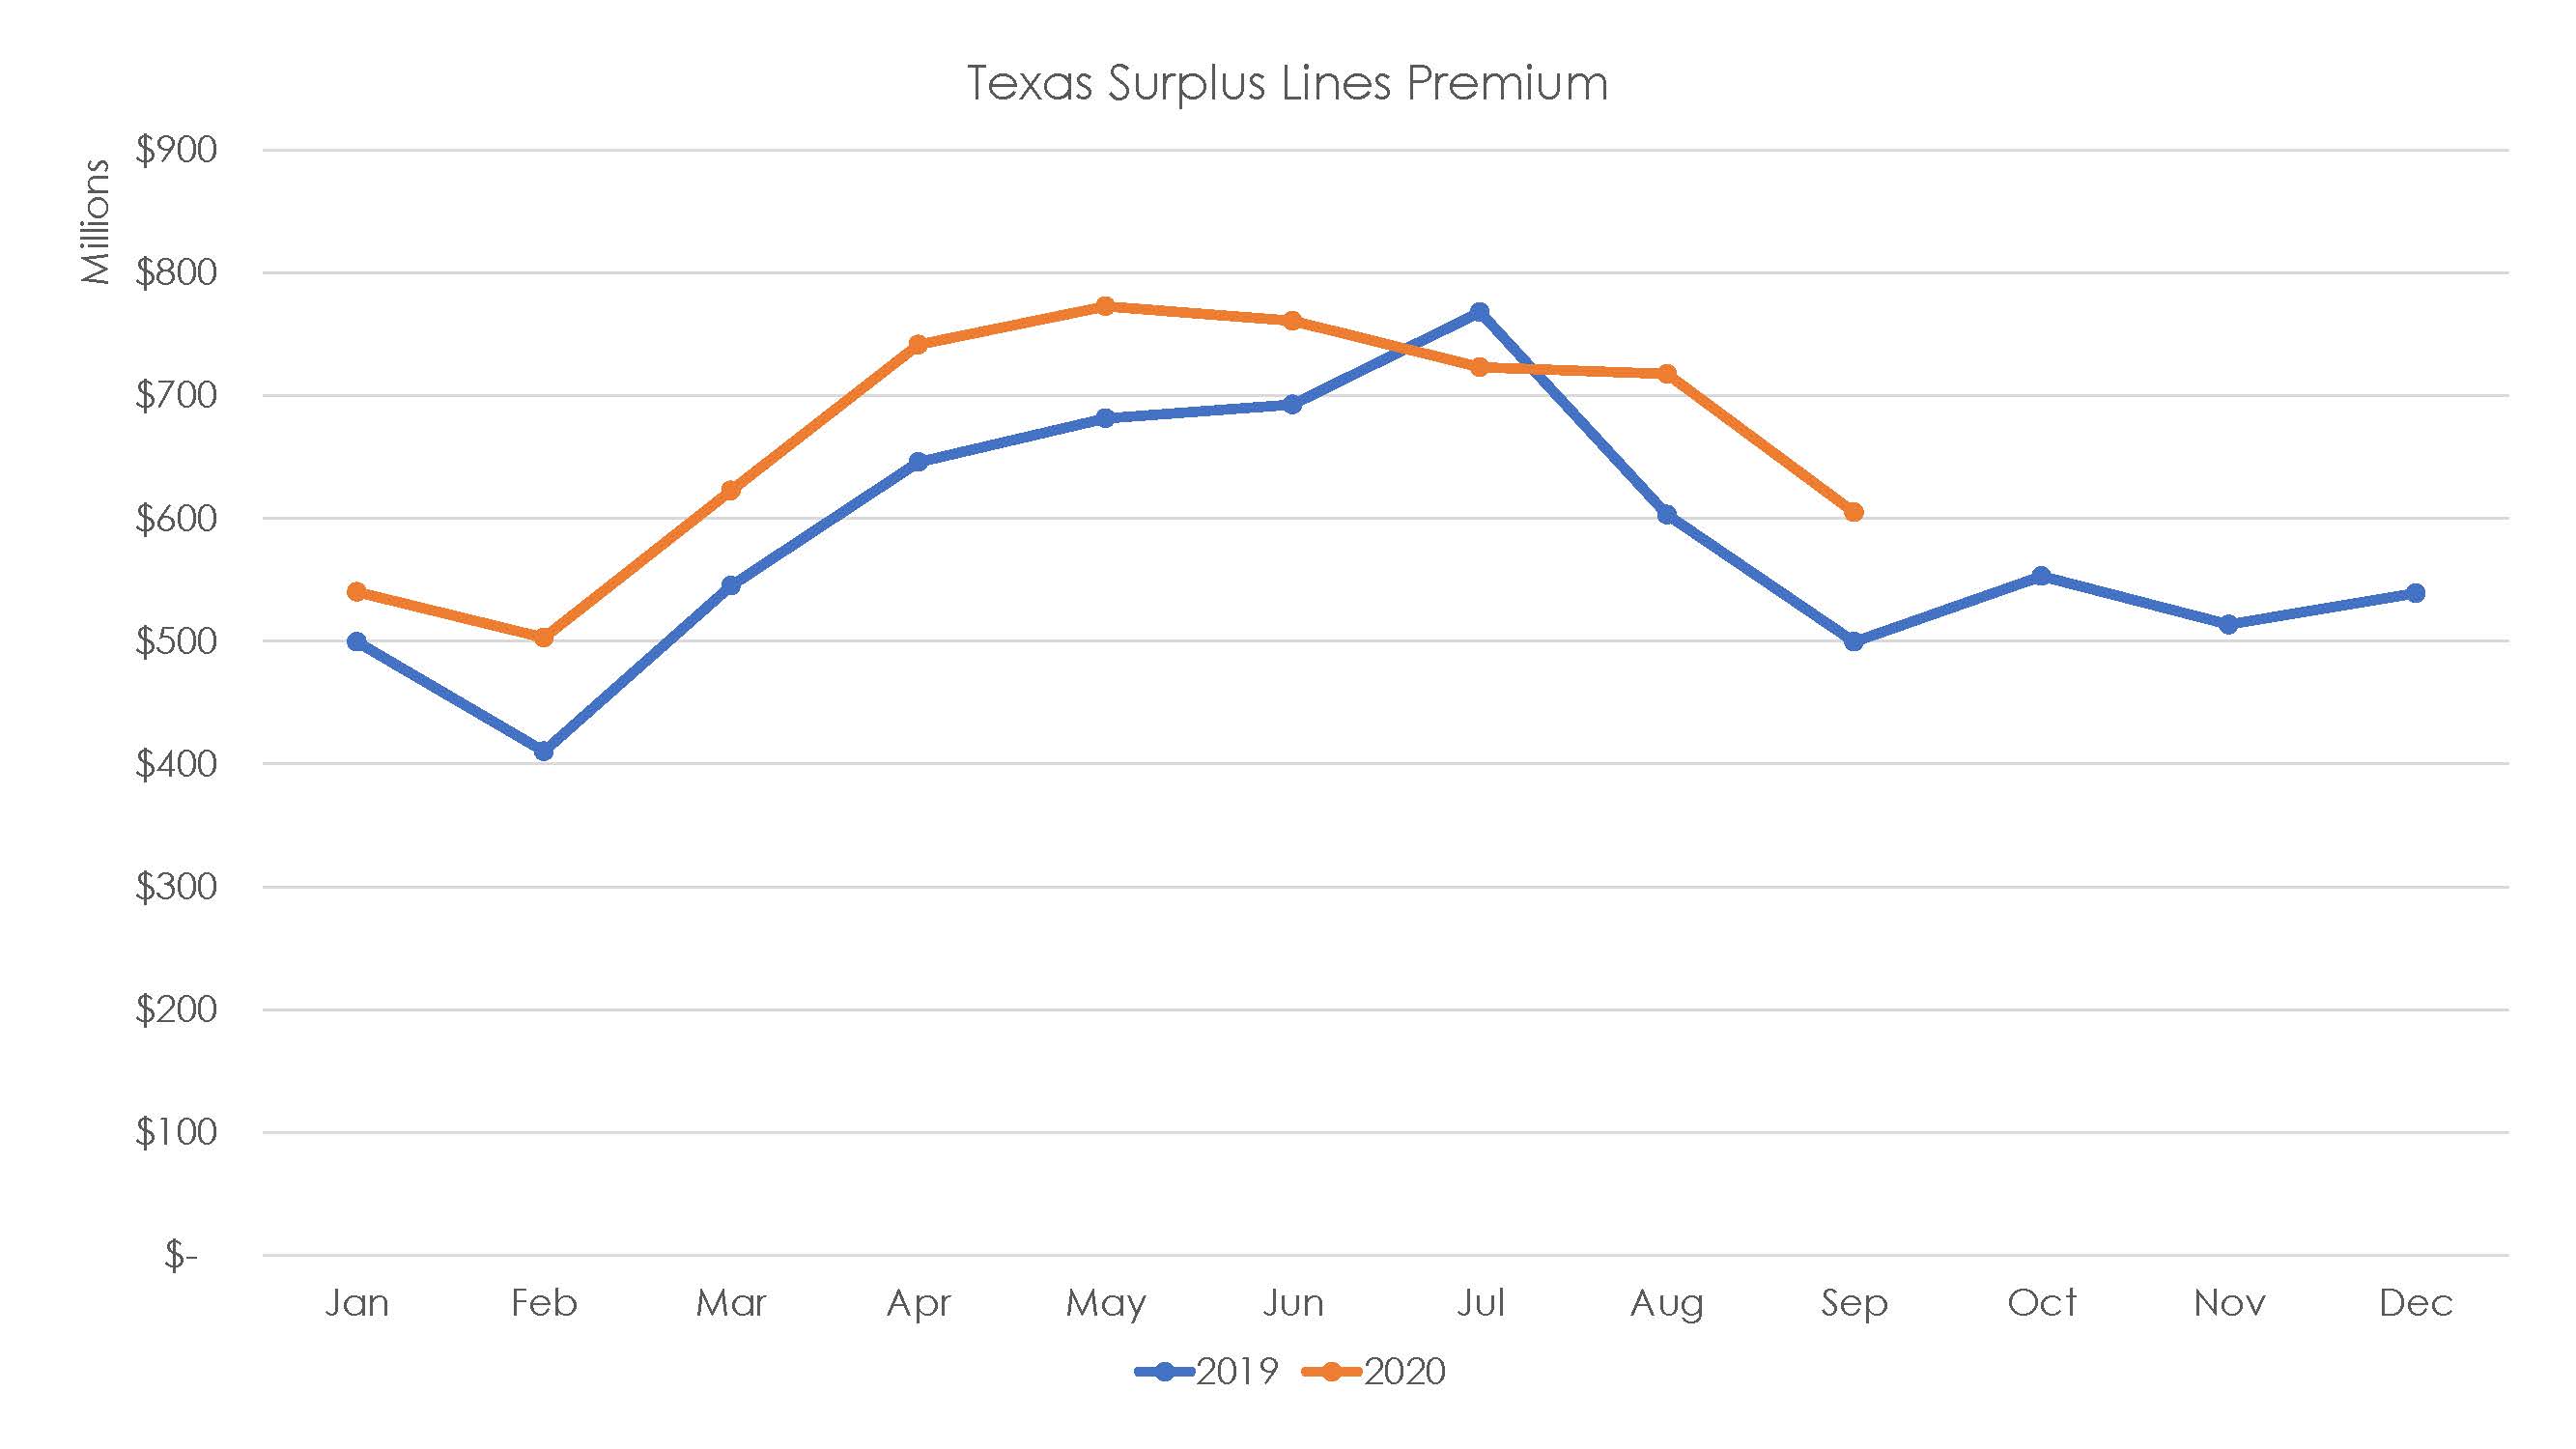 Surplus Lines Premium Continues Upward Trend